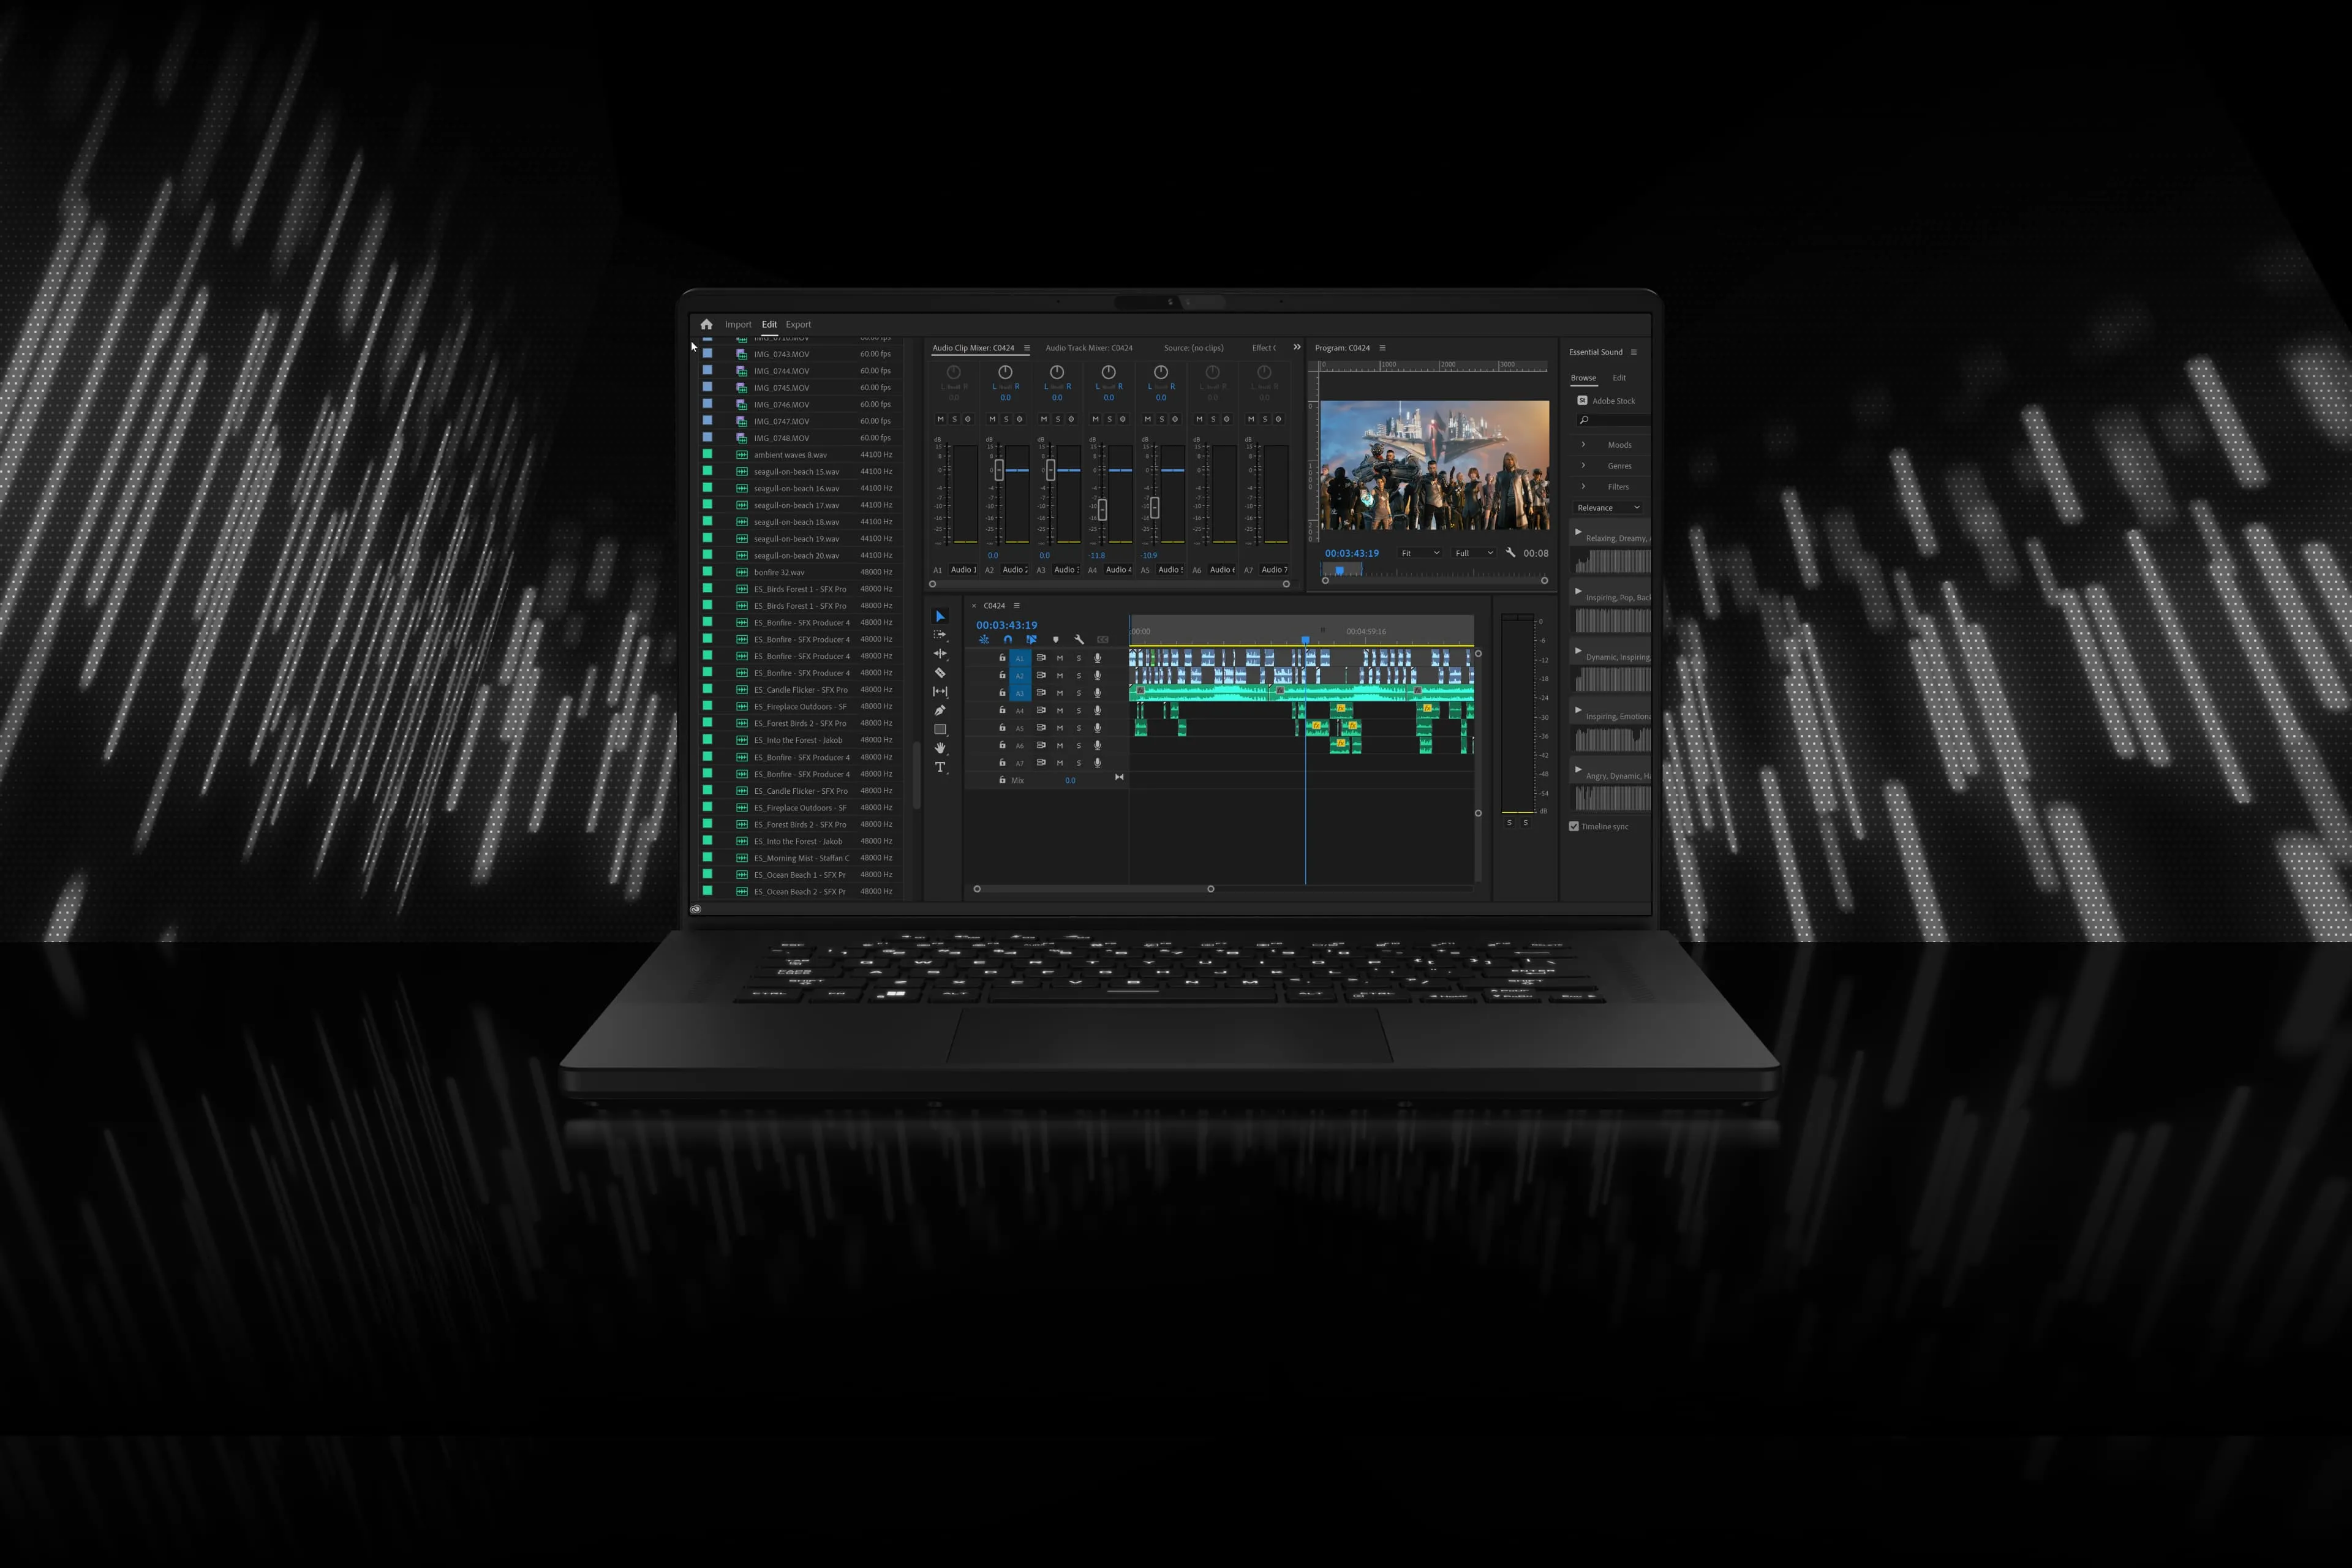 Ноутбук ROG Zephyrus M16 показан с открытым приложением для редактирования аудиоматериалов. Из него выходят стилизованные звуковые волны.